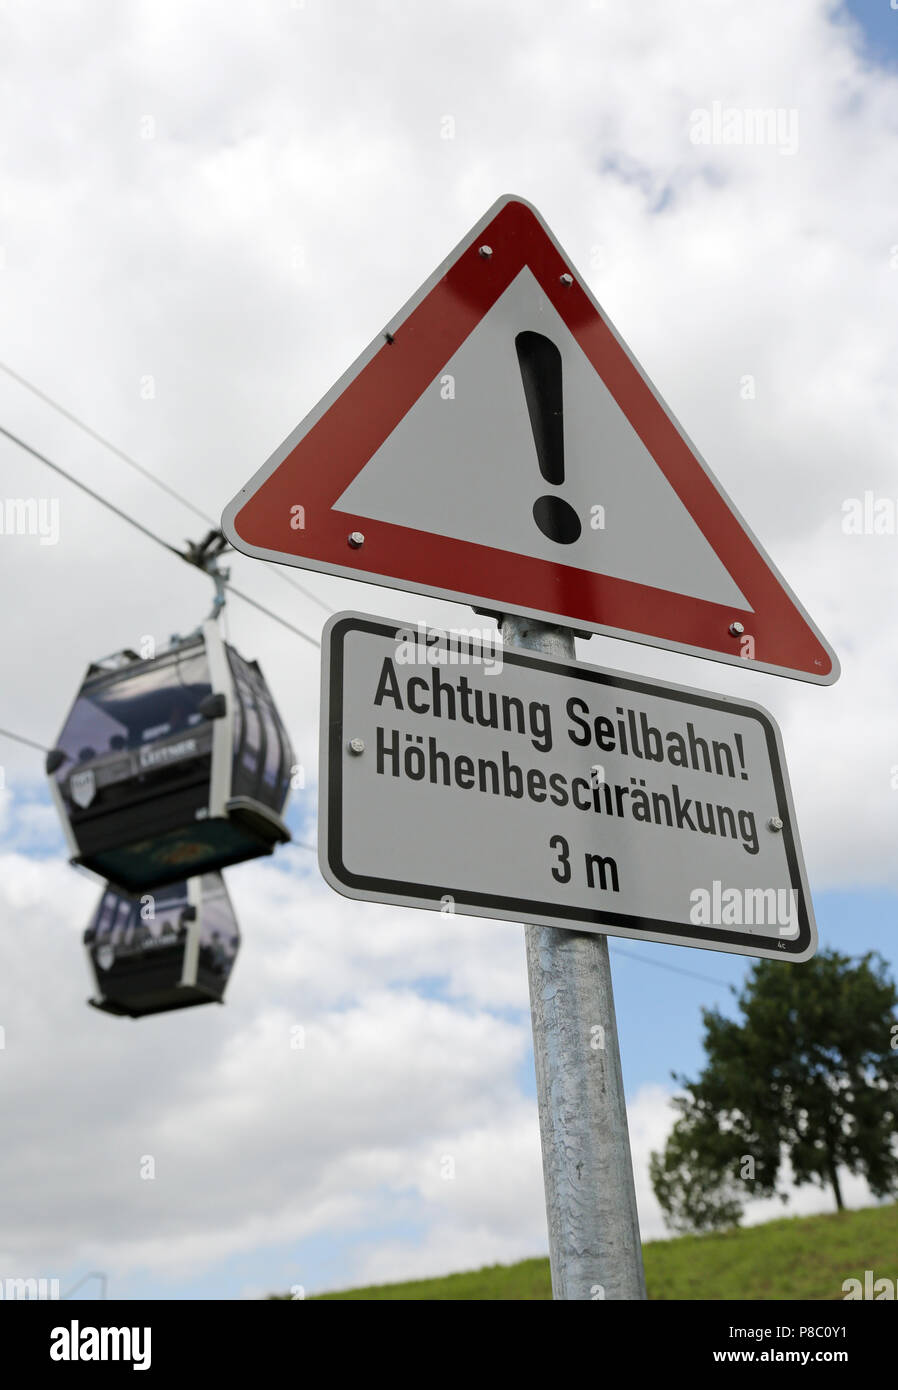 Berlin, Deutschland, unterzeichnen - Achtung kabel Auto - Vor zwei Gondeln der Seilbahn Stockfoto